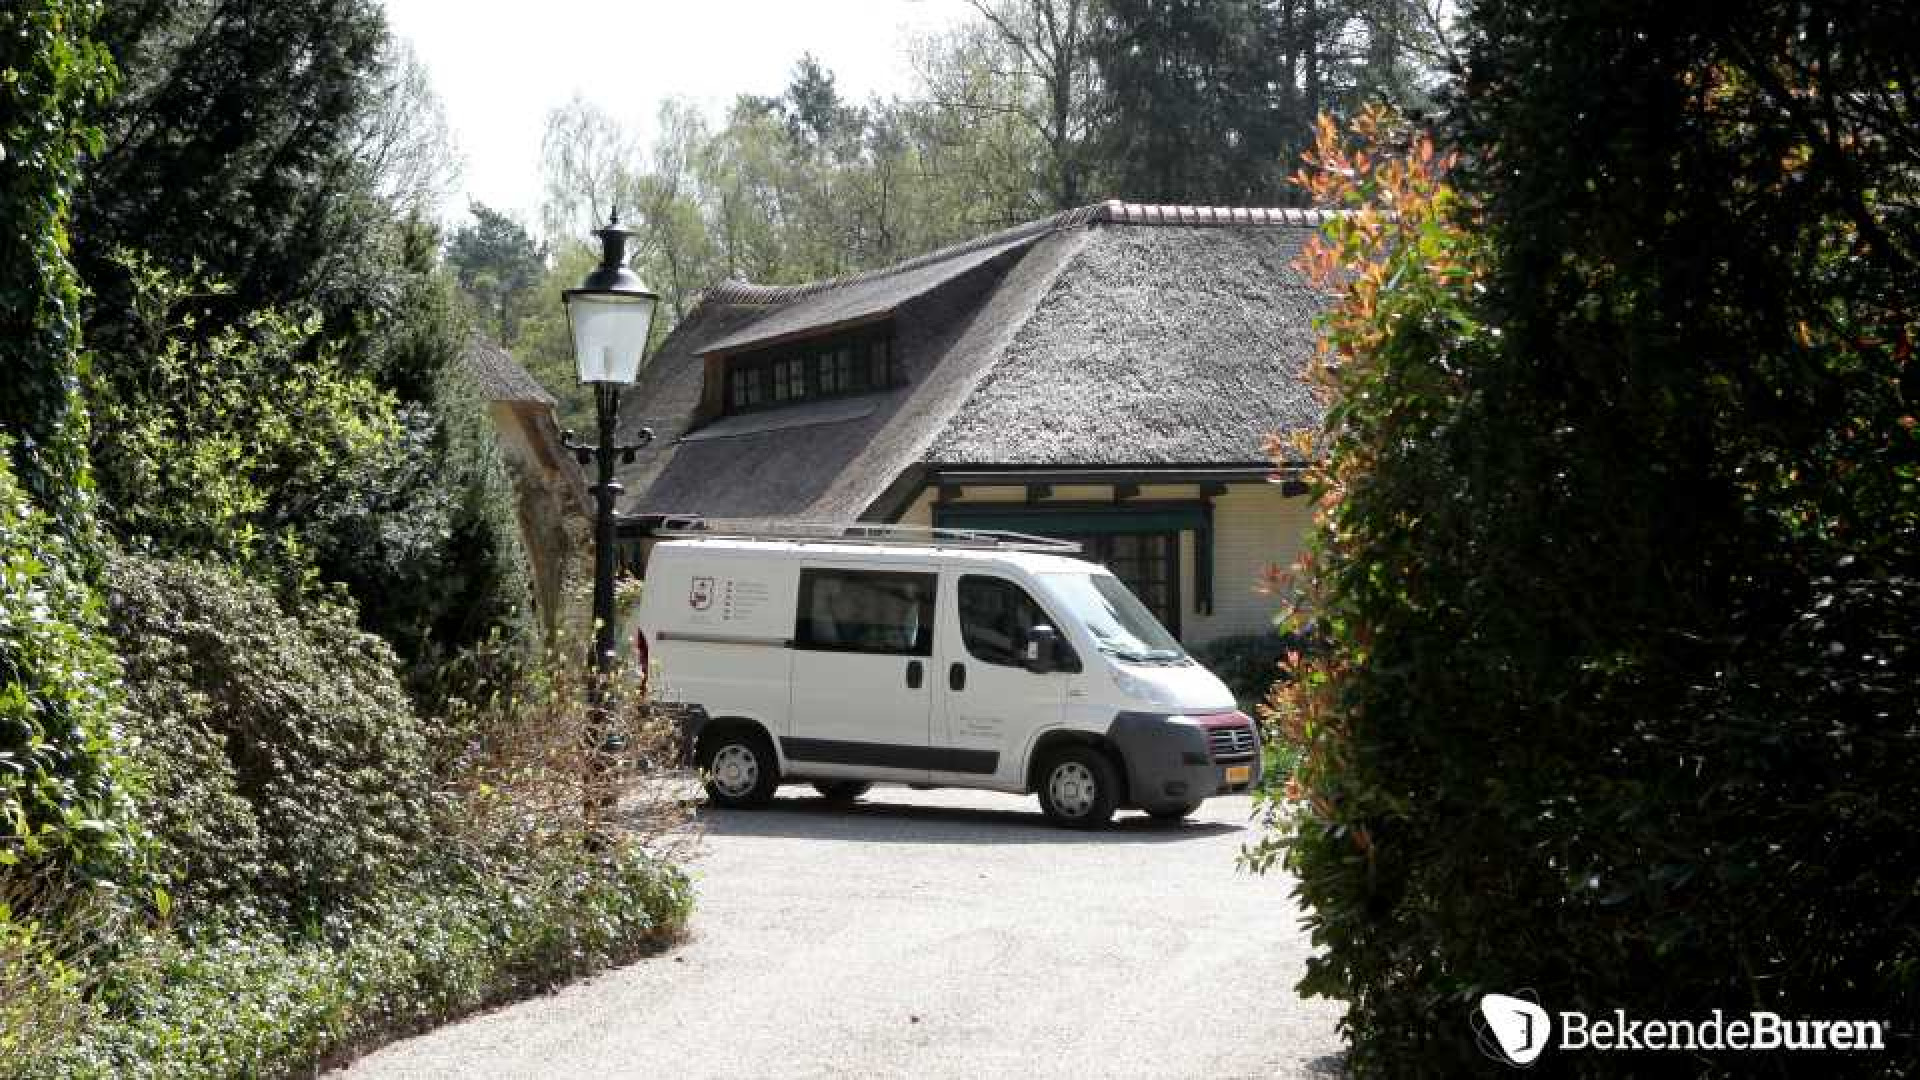 Prinses Irene koopt kapitale villa in Doorn. Zie foto's